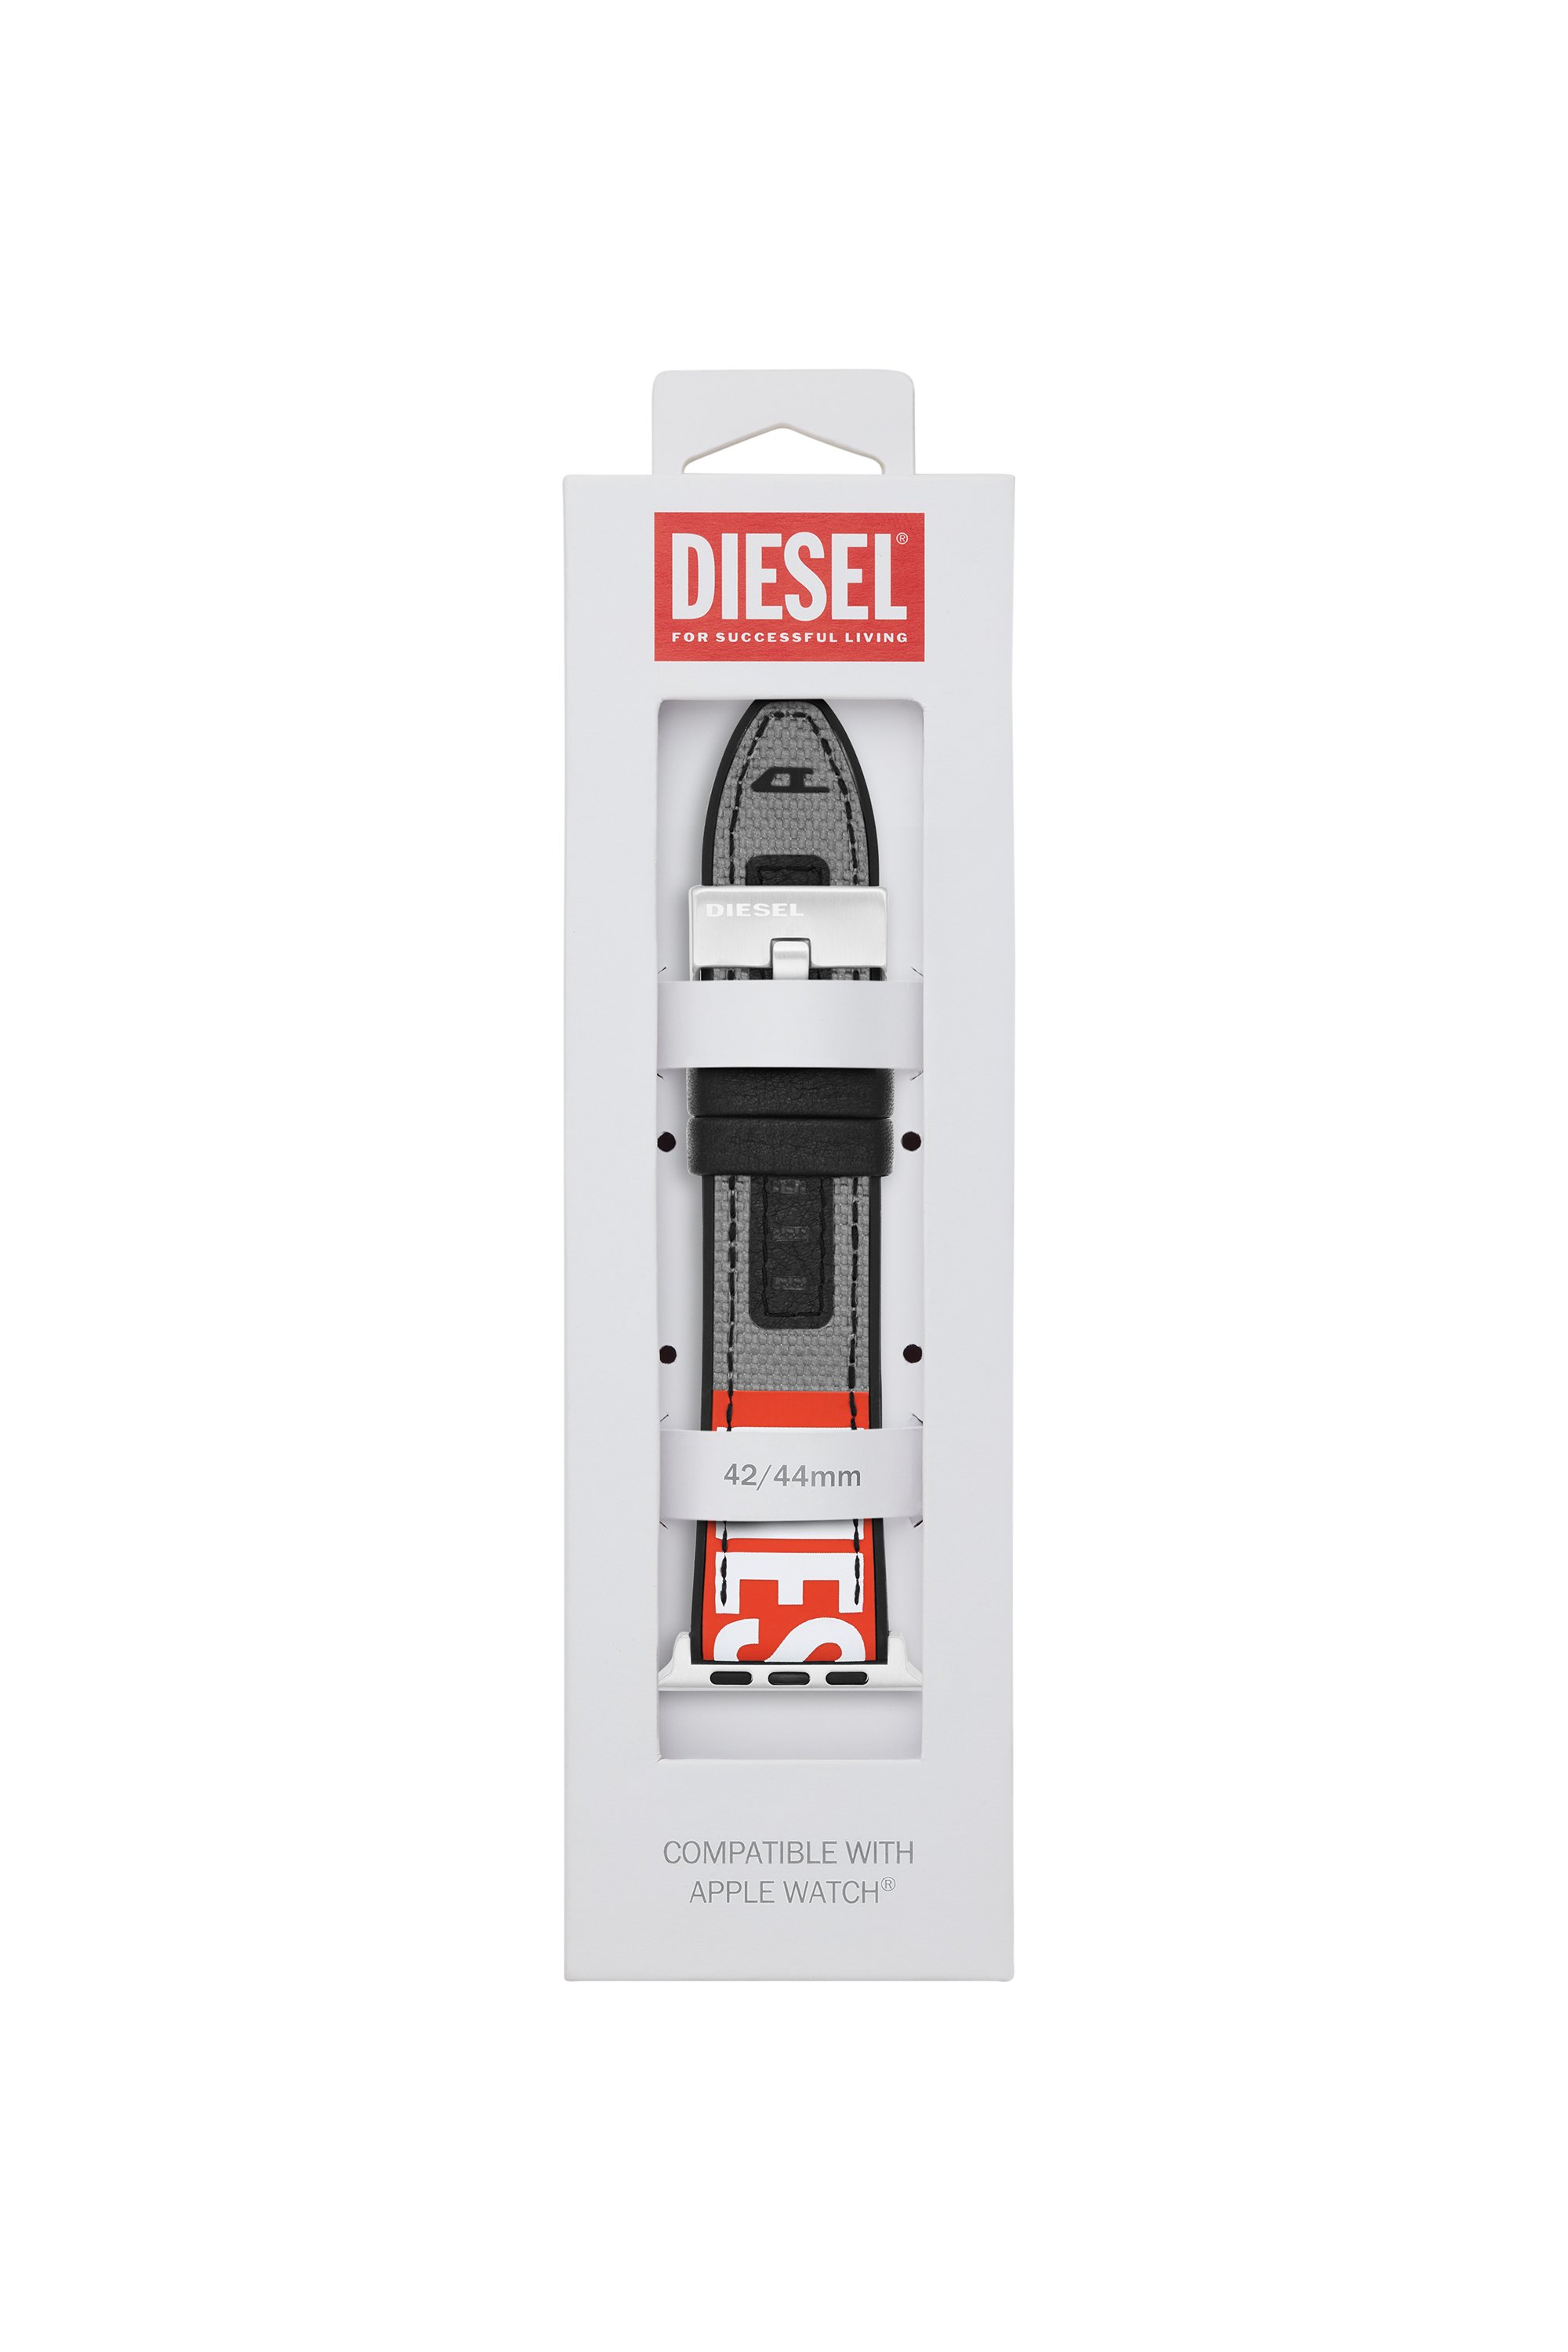 Diesel - DSS006, Grigio - Image 2